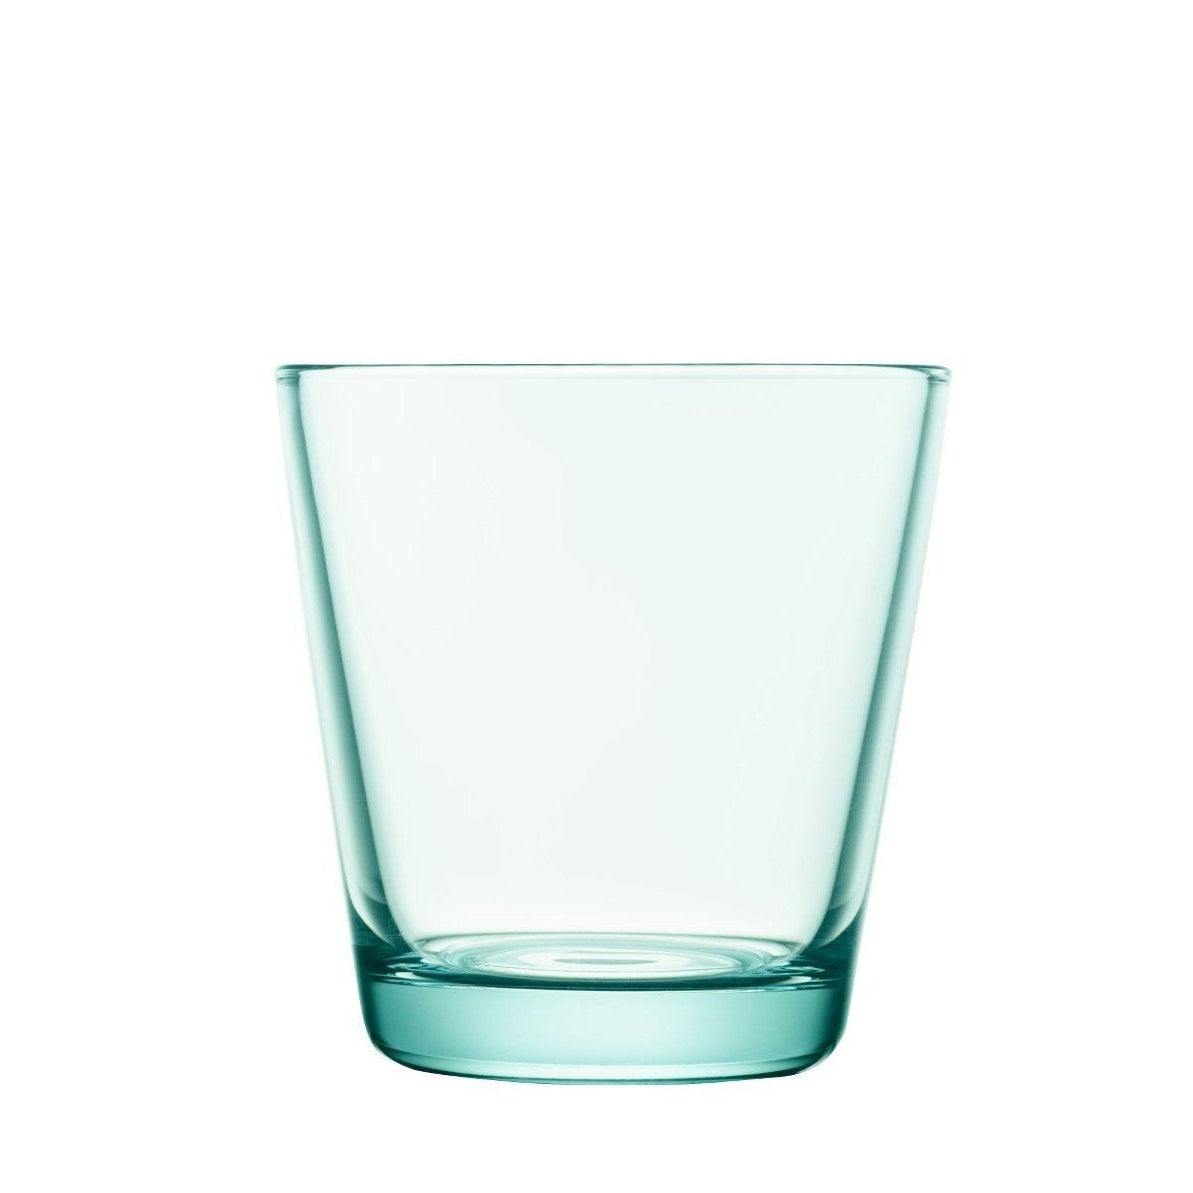 Iittala Kartio Glas Wassergrün 2Stck, 21cl-Wasserglas-Iittala-6411929510701-1008631-IIT-inwohn